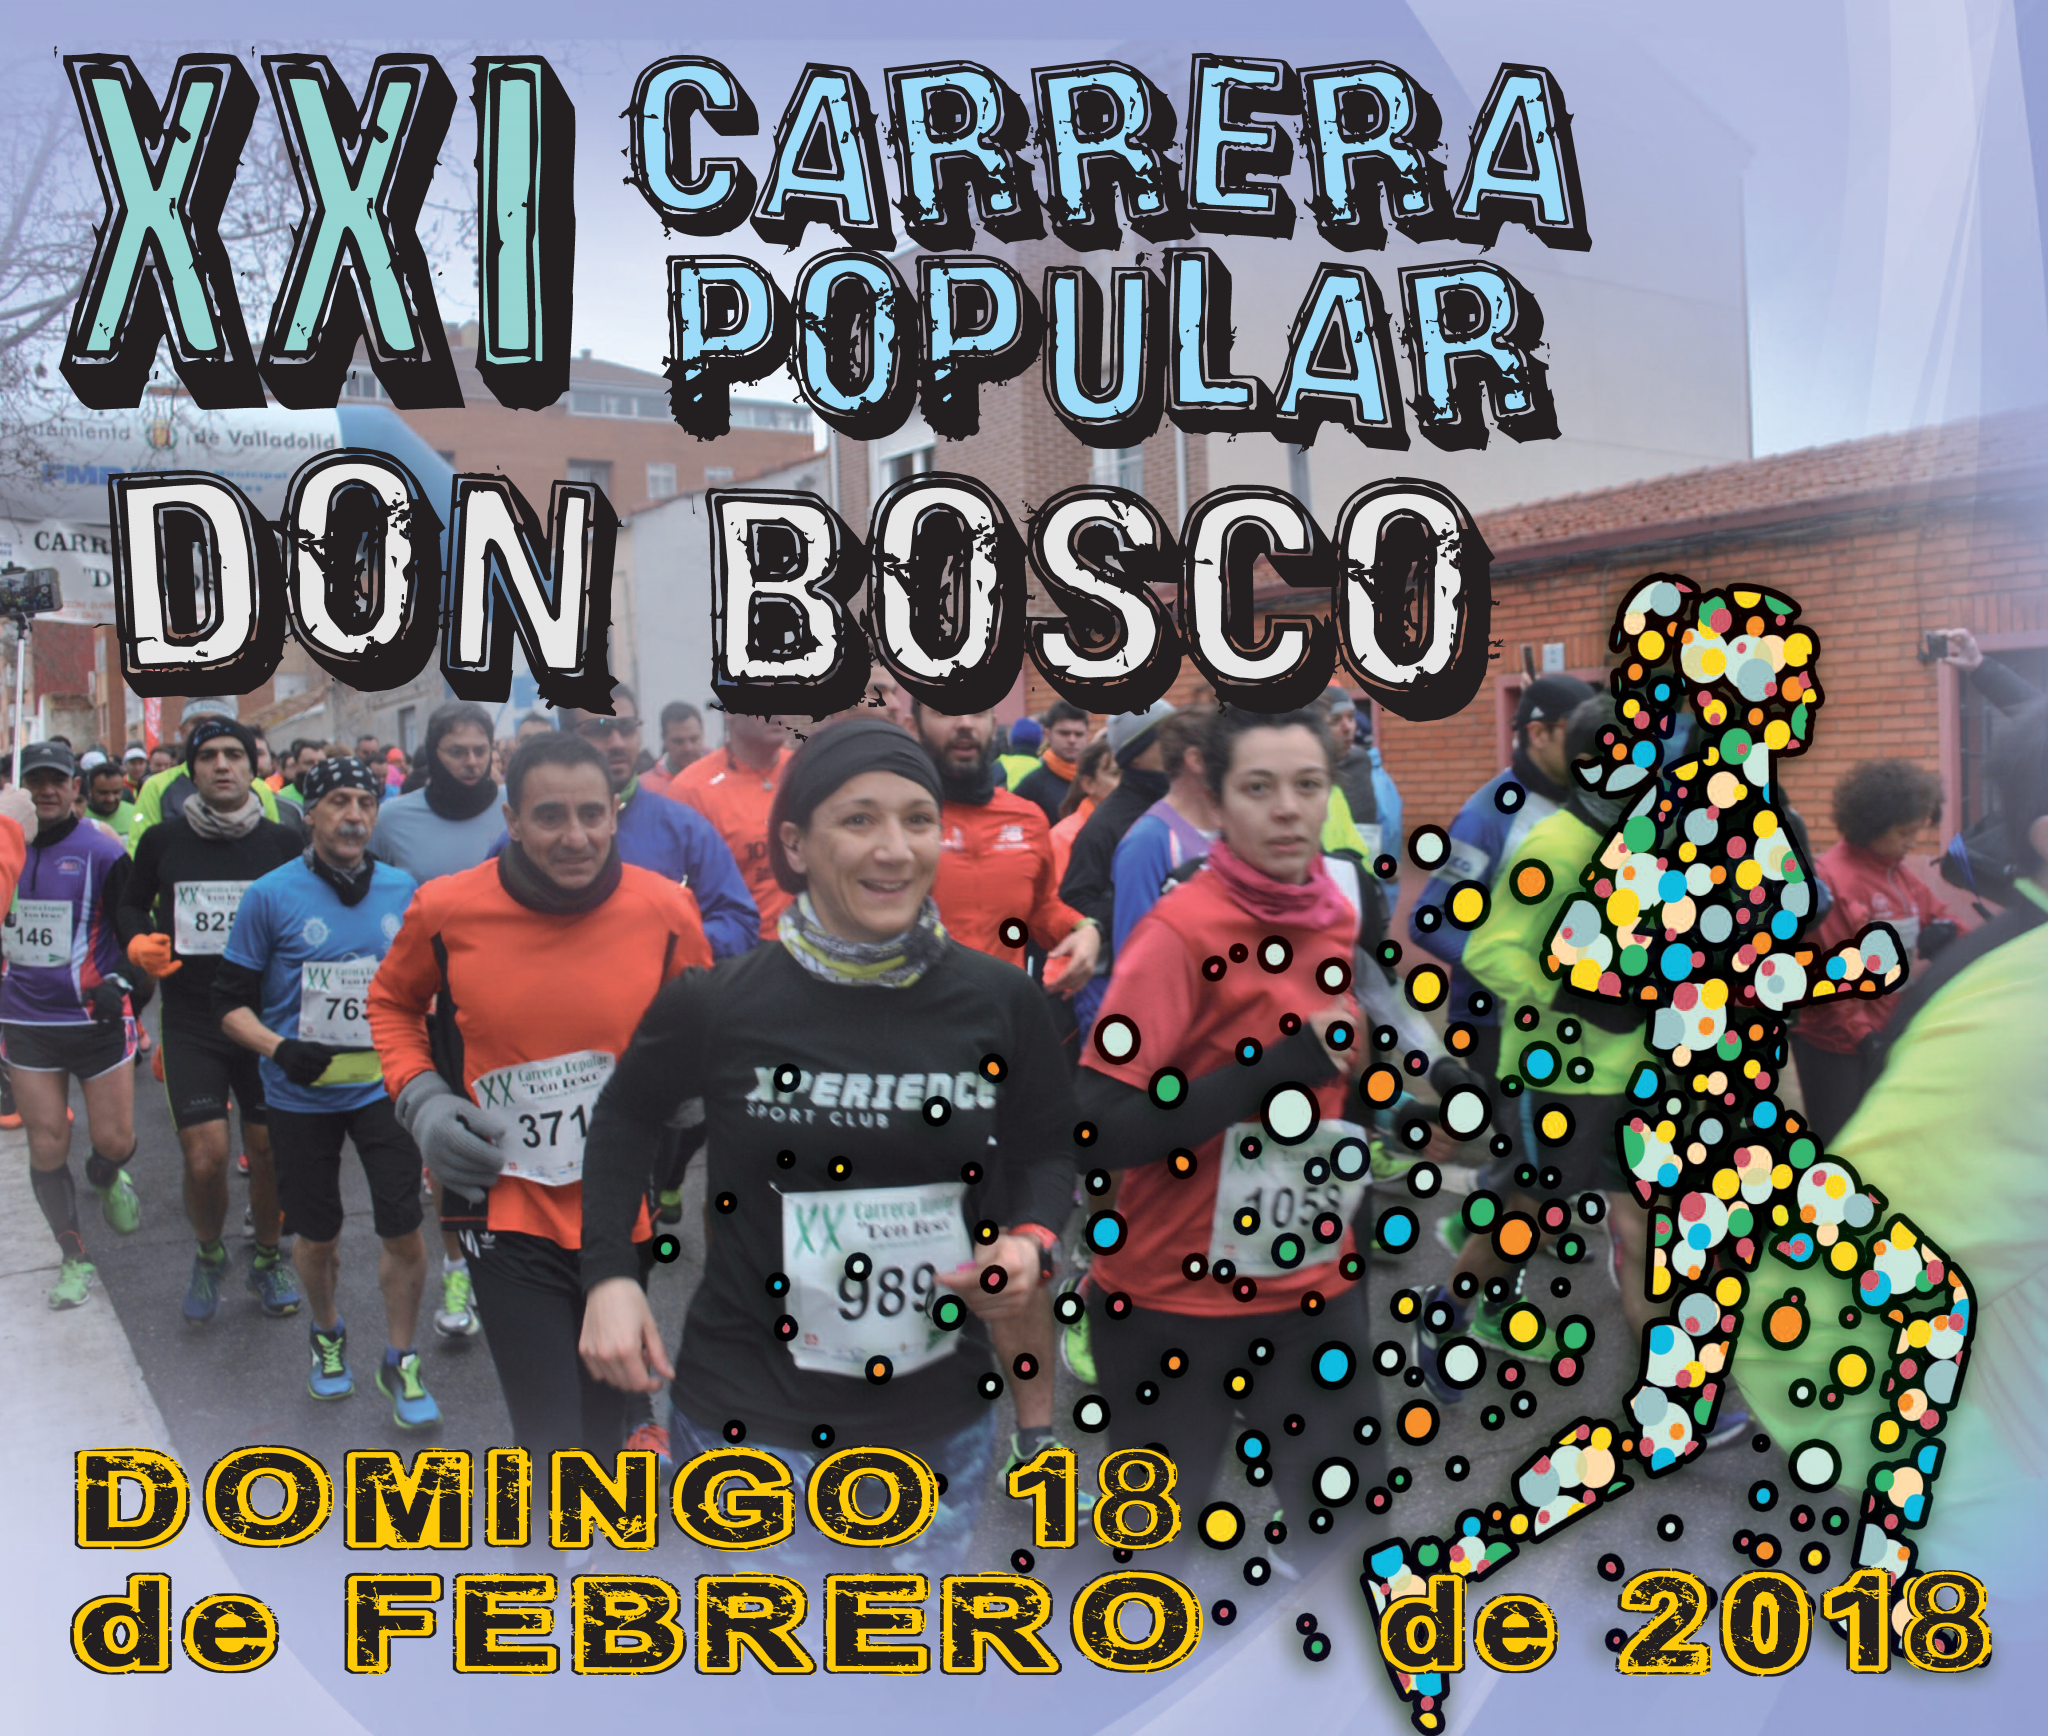 18 Feb: XXI Carrera Popular Don Bosco